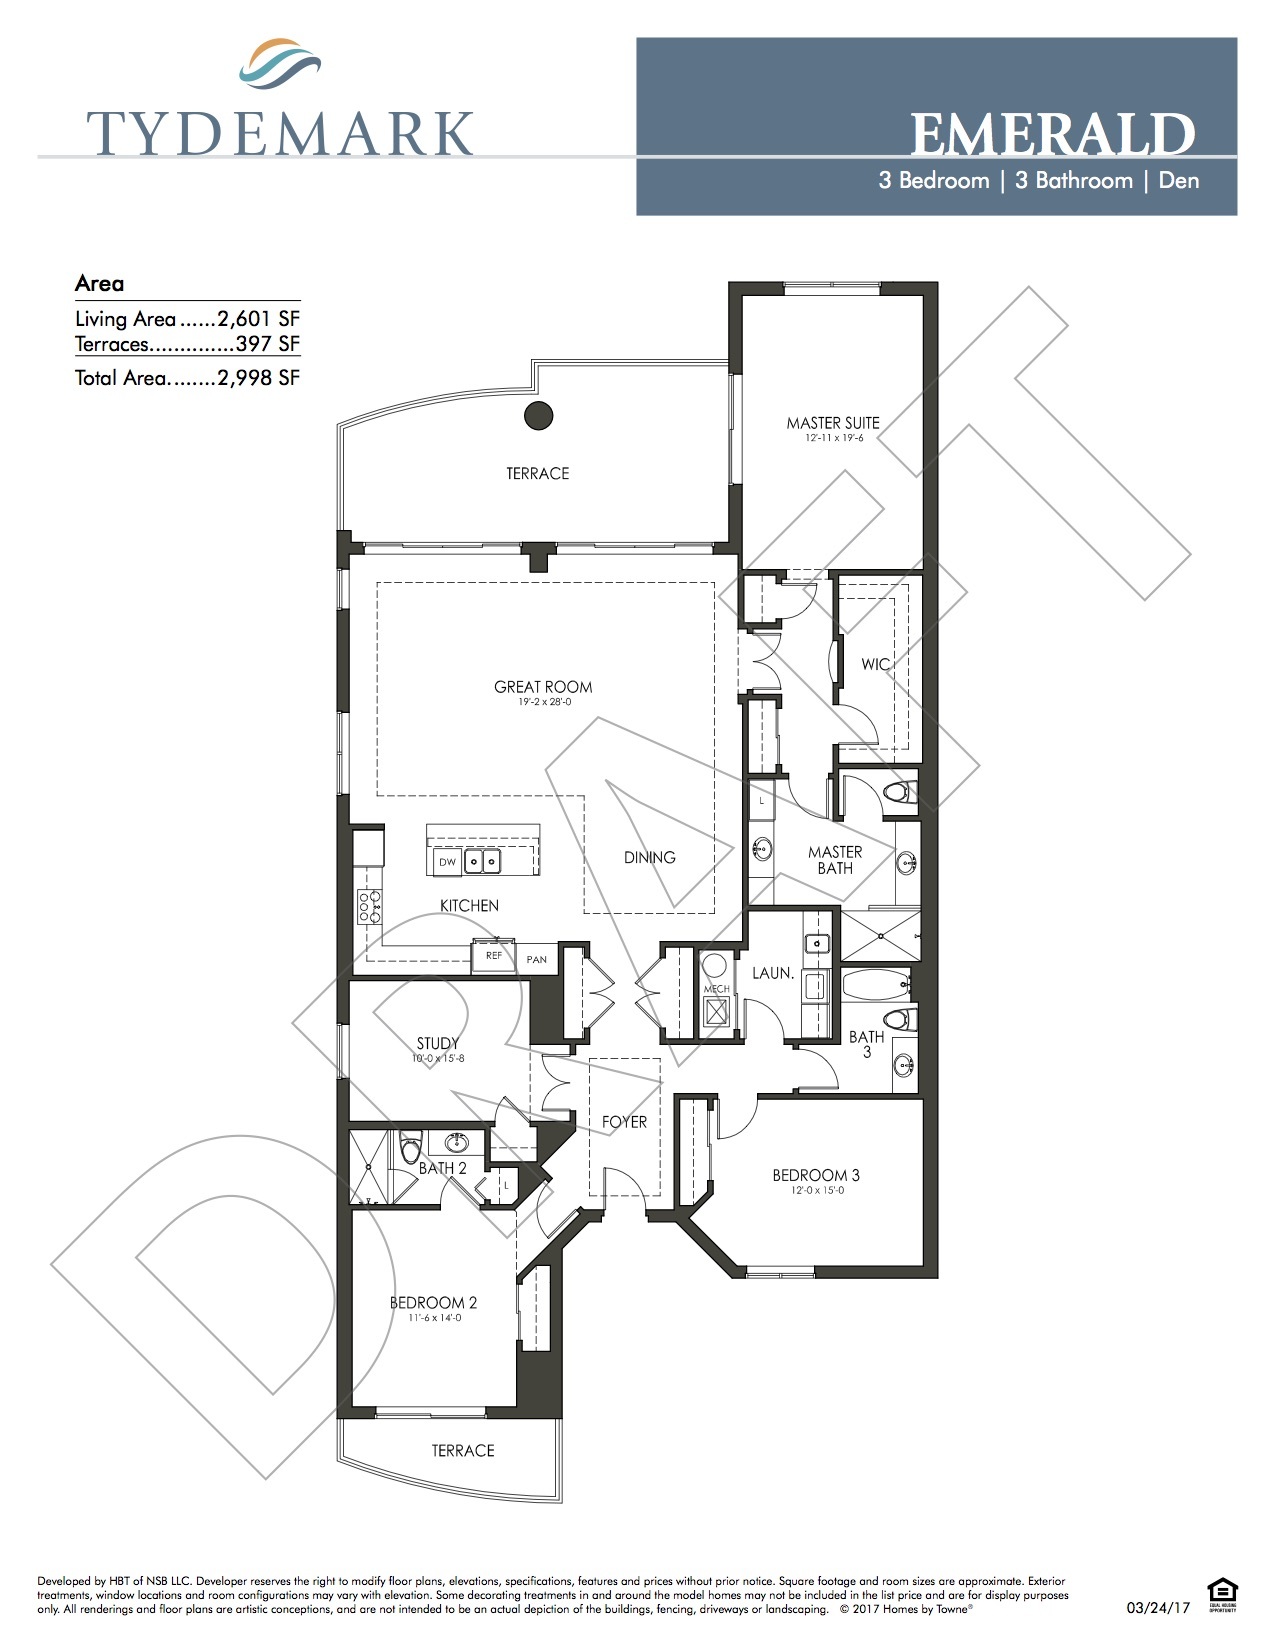 Emerald floor plan — view layout below